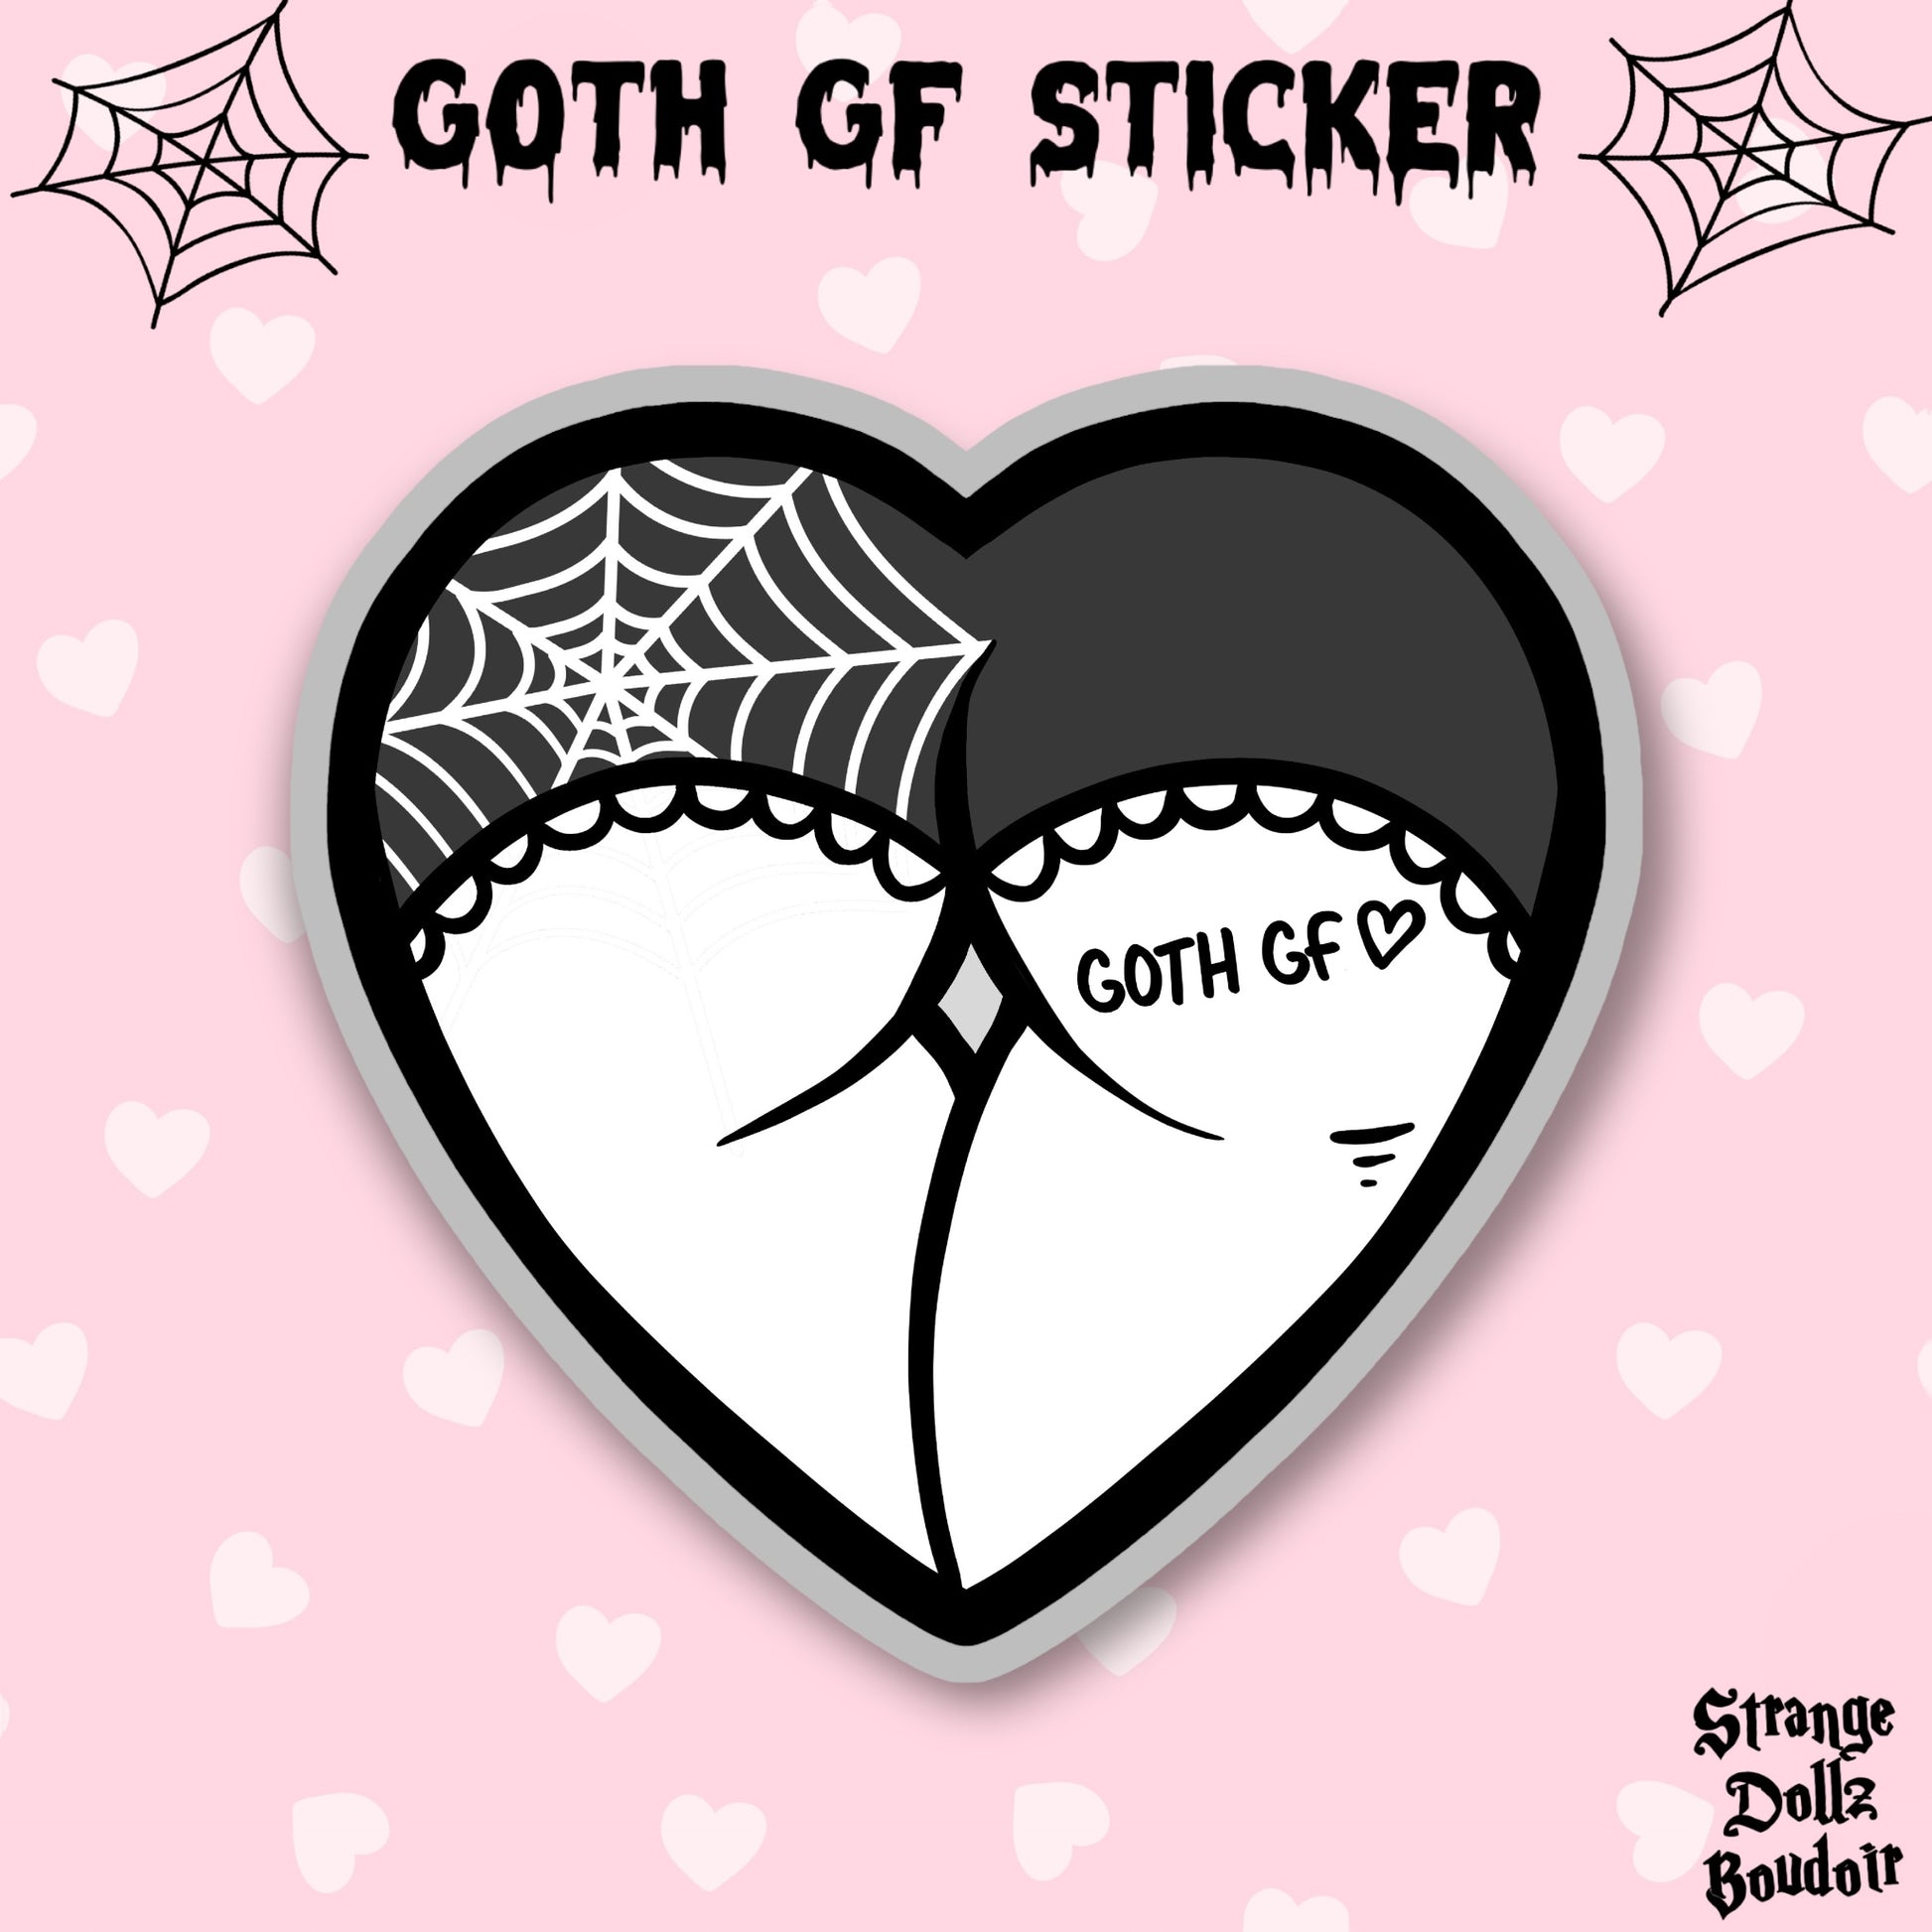 Goth GF sticker, goth girlfriend, gothic sticker, kawaii, pastel goth, Strange Dollz Boudoir